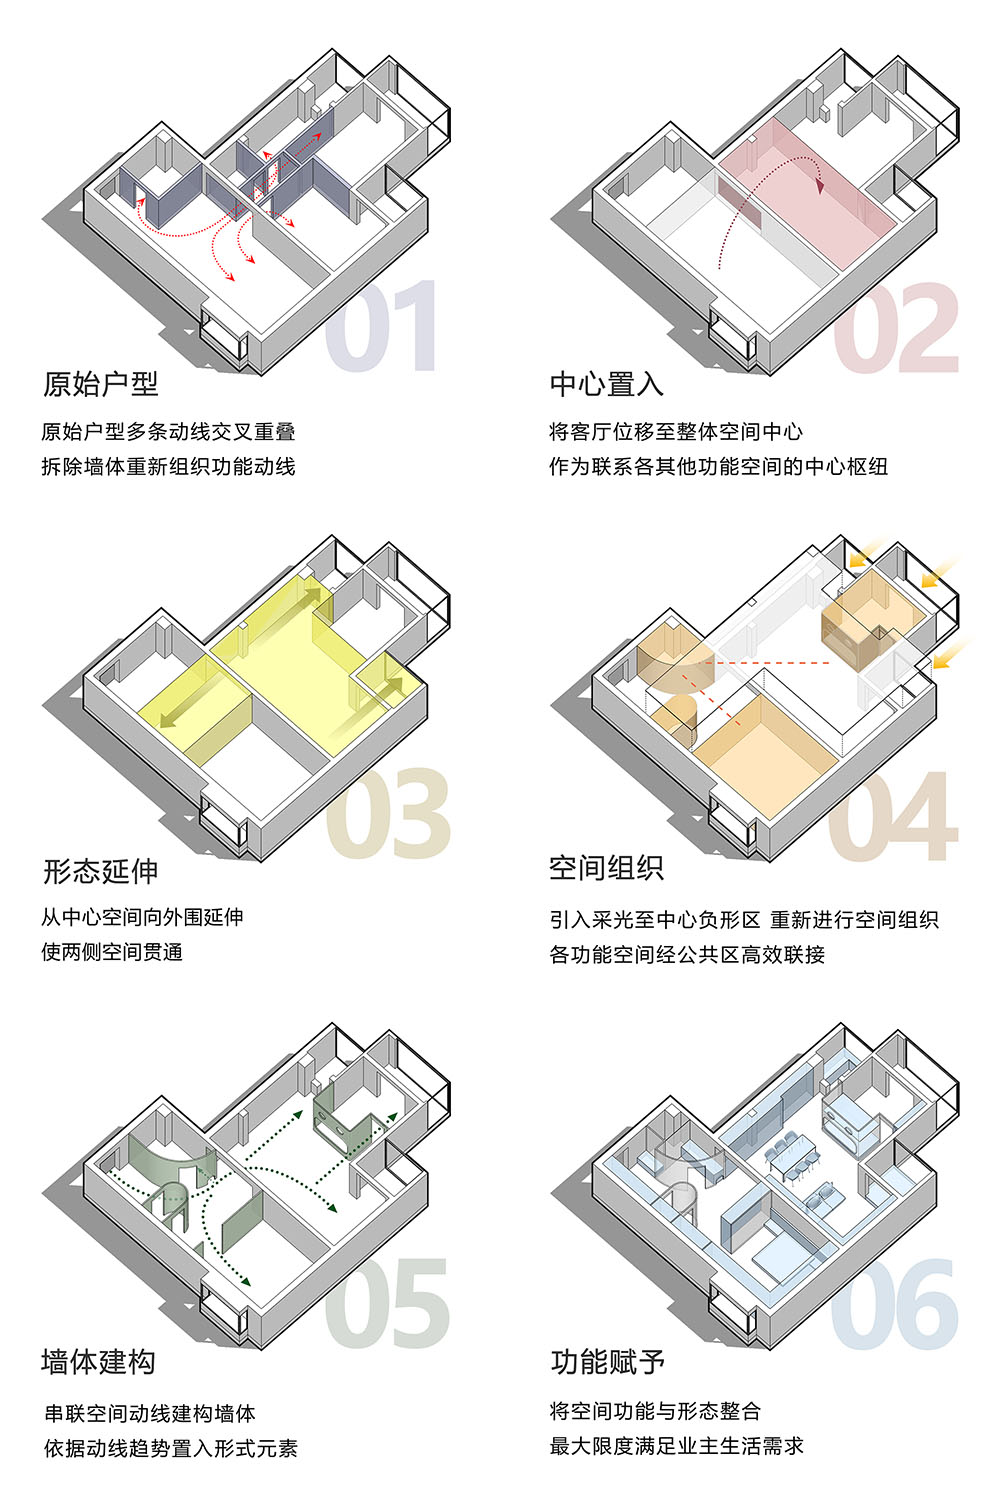 133㎡住宅設計,133㎡,住宅設計,家裝設計,北京,北京住宅設計,現代風格住宅設計,北京家裝設計,住宅設計案例,戲構建築,戲構建築設計,戲構建築設計公司,戲構建築設計工作室